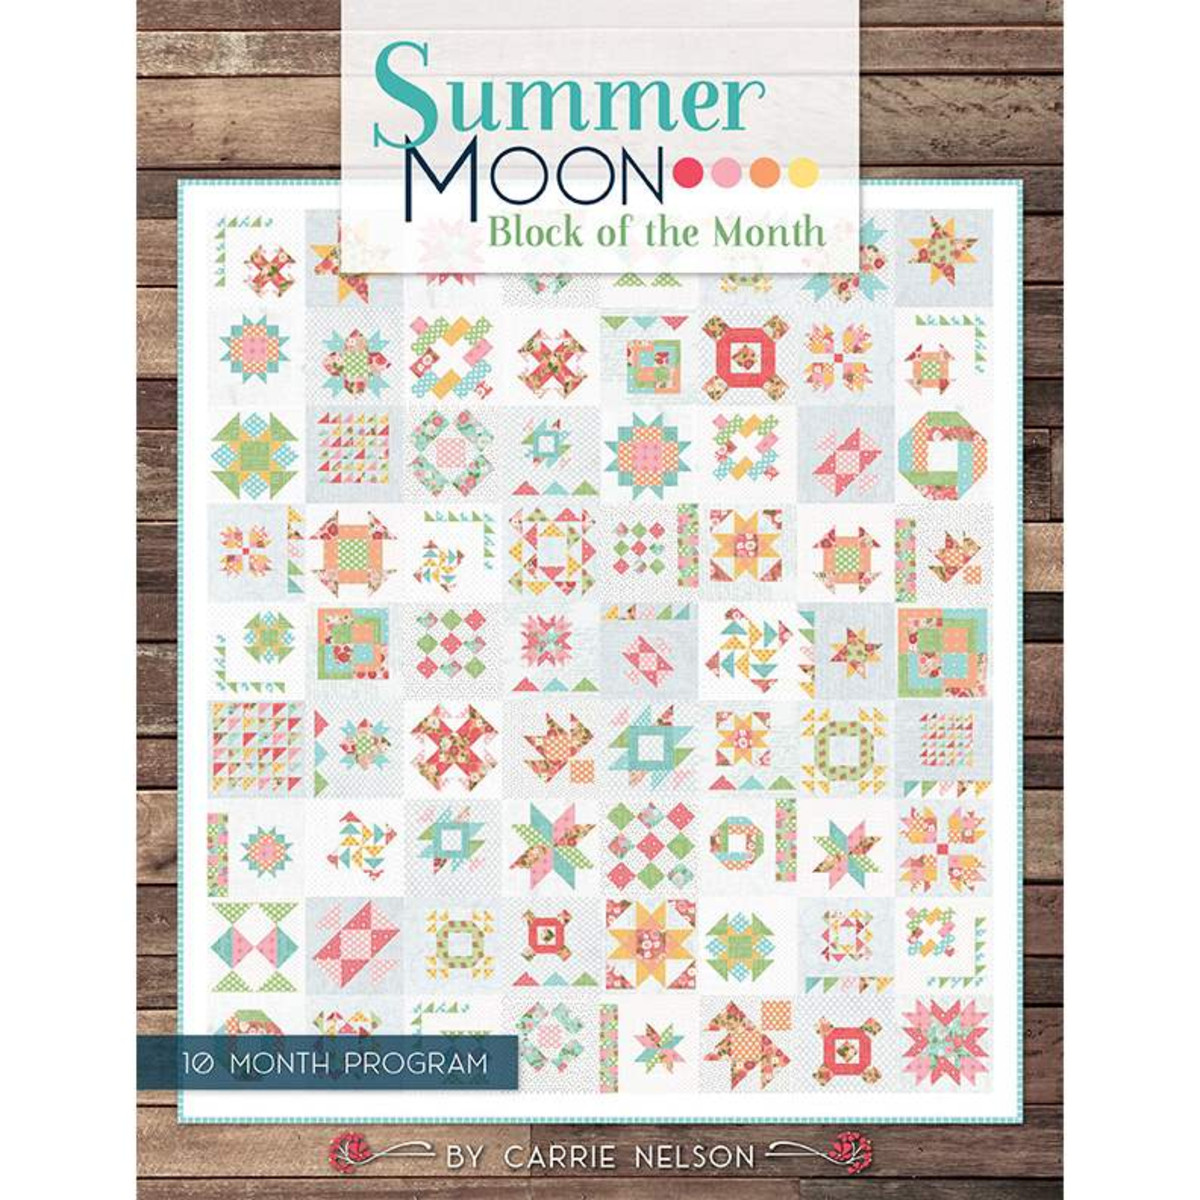 Summer Moon Quilt Pattern Book